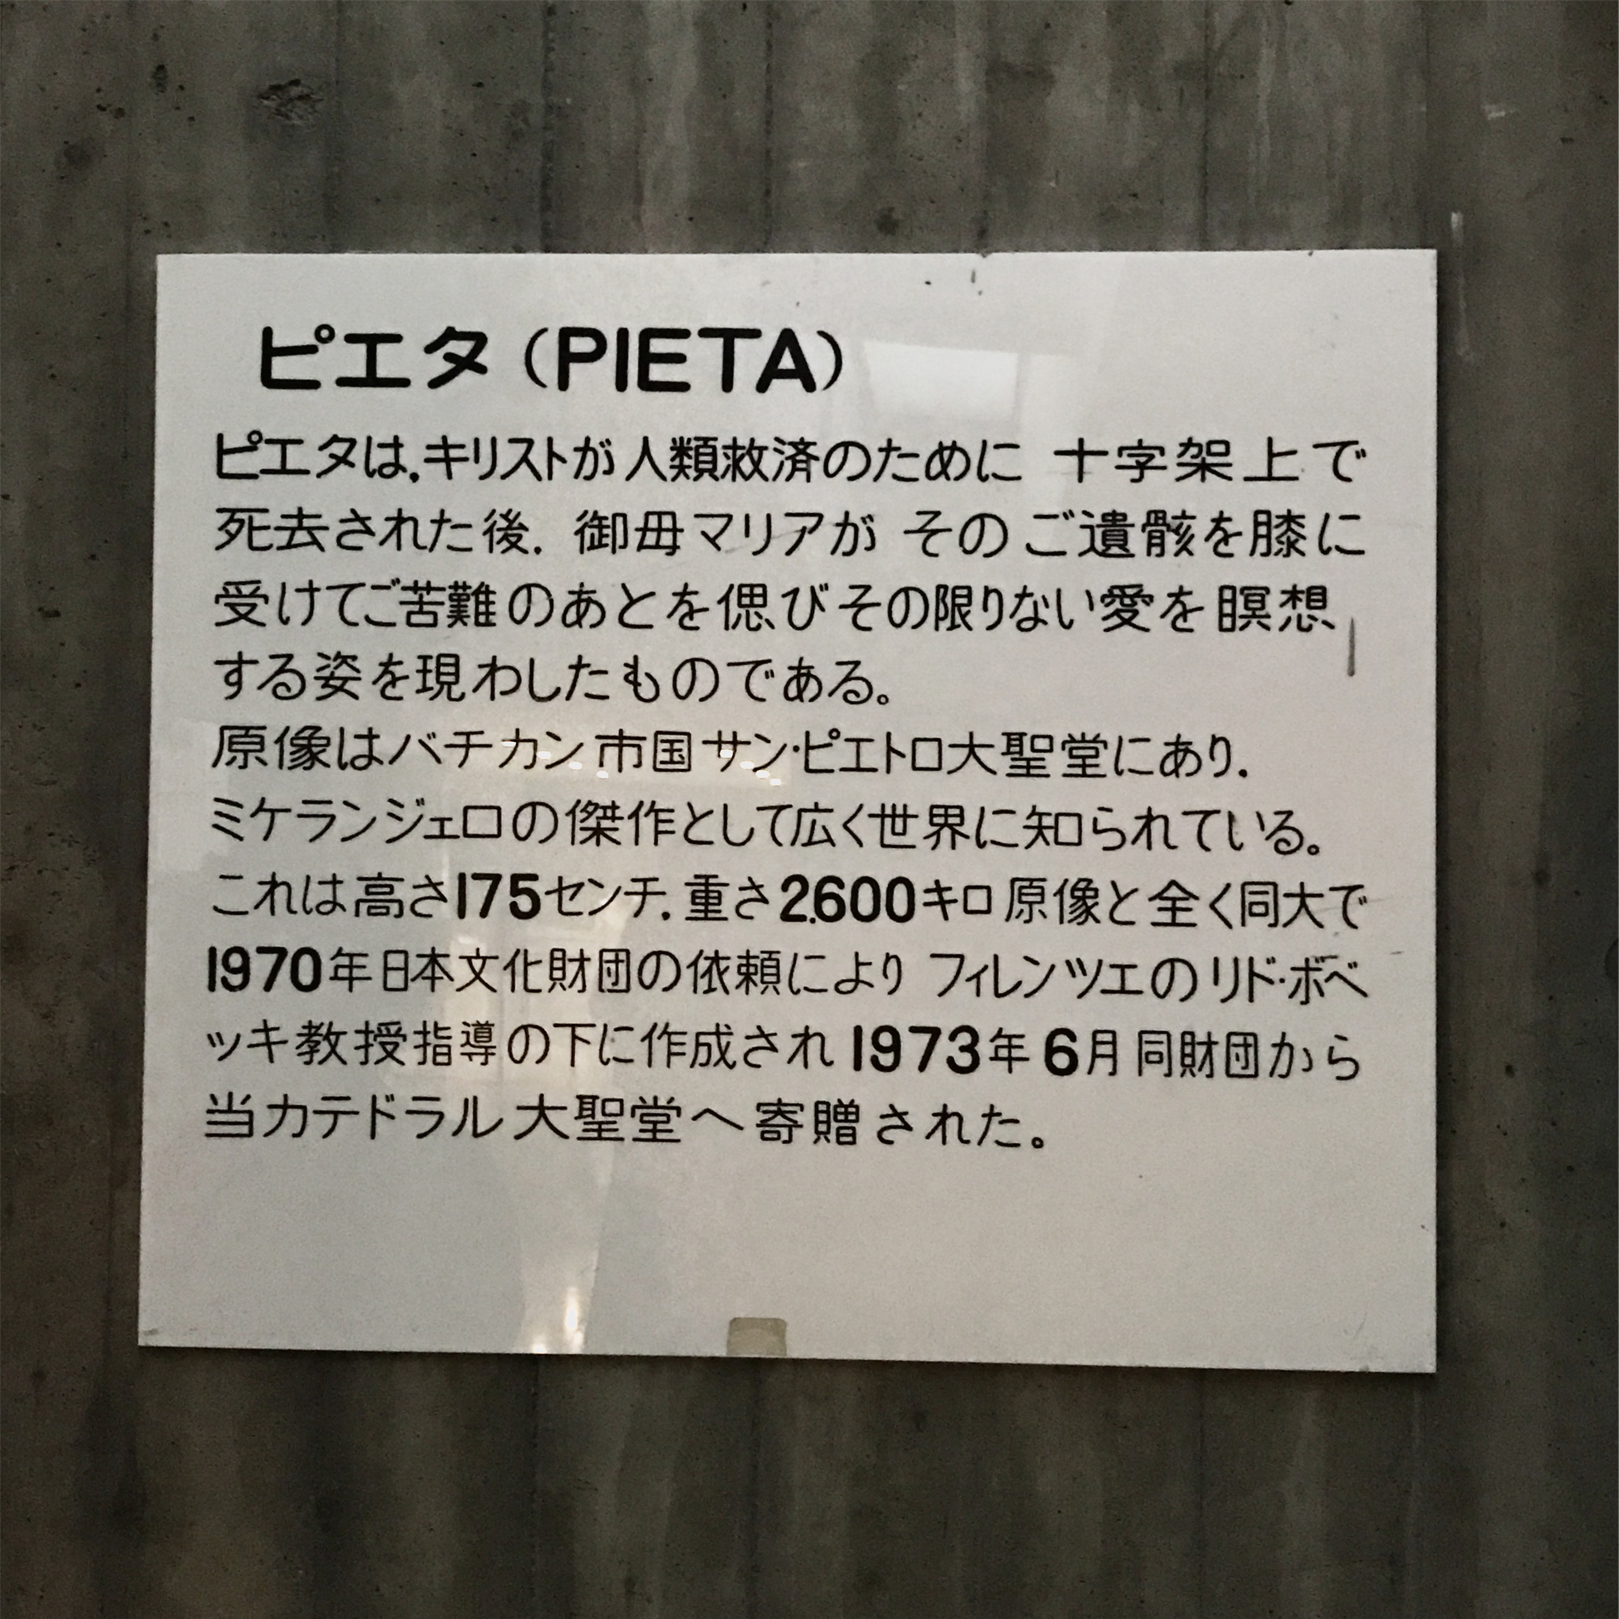 東京カテドラル内のピエタの説明